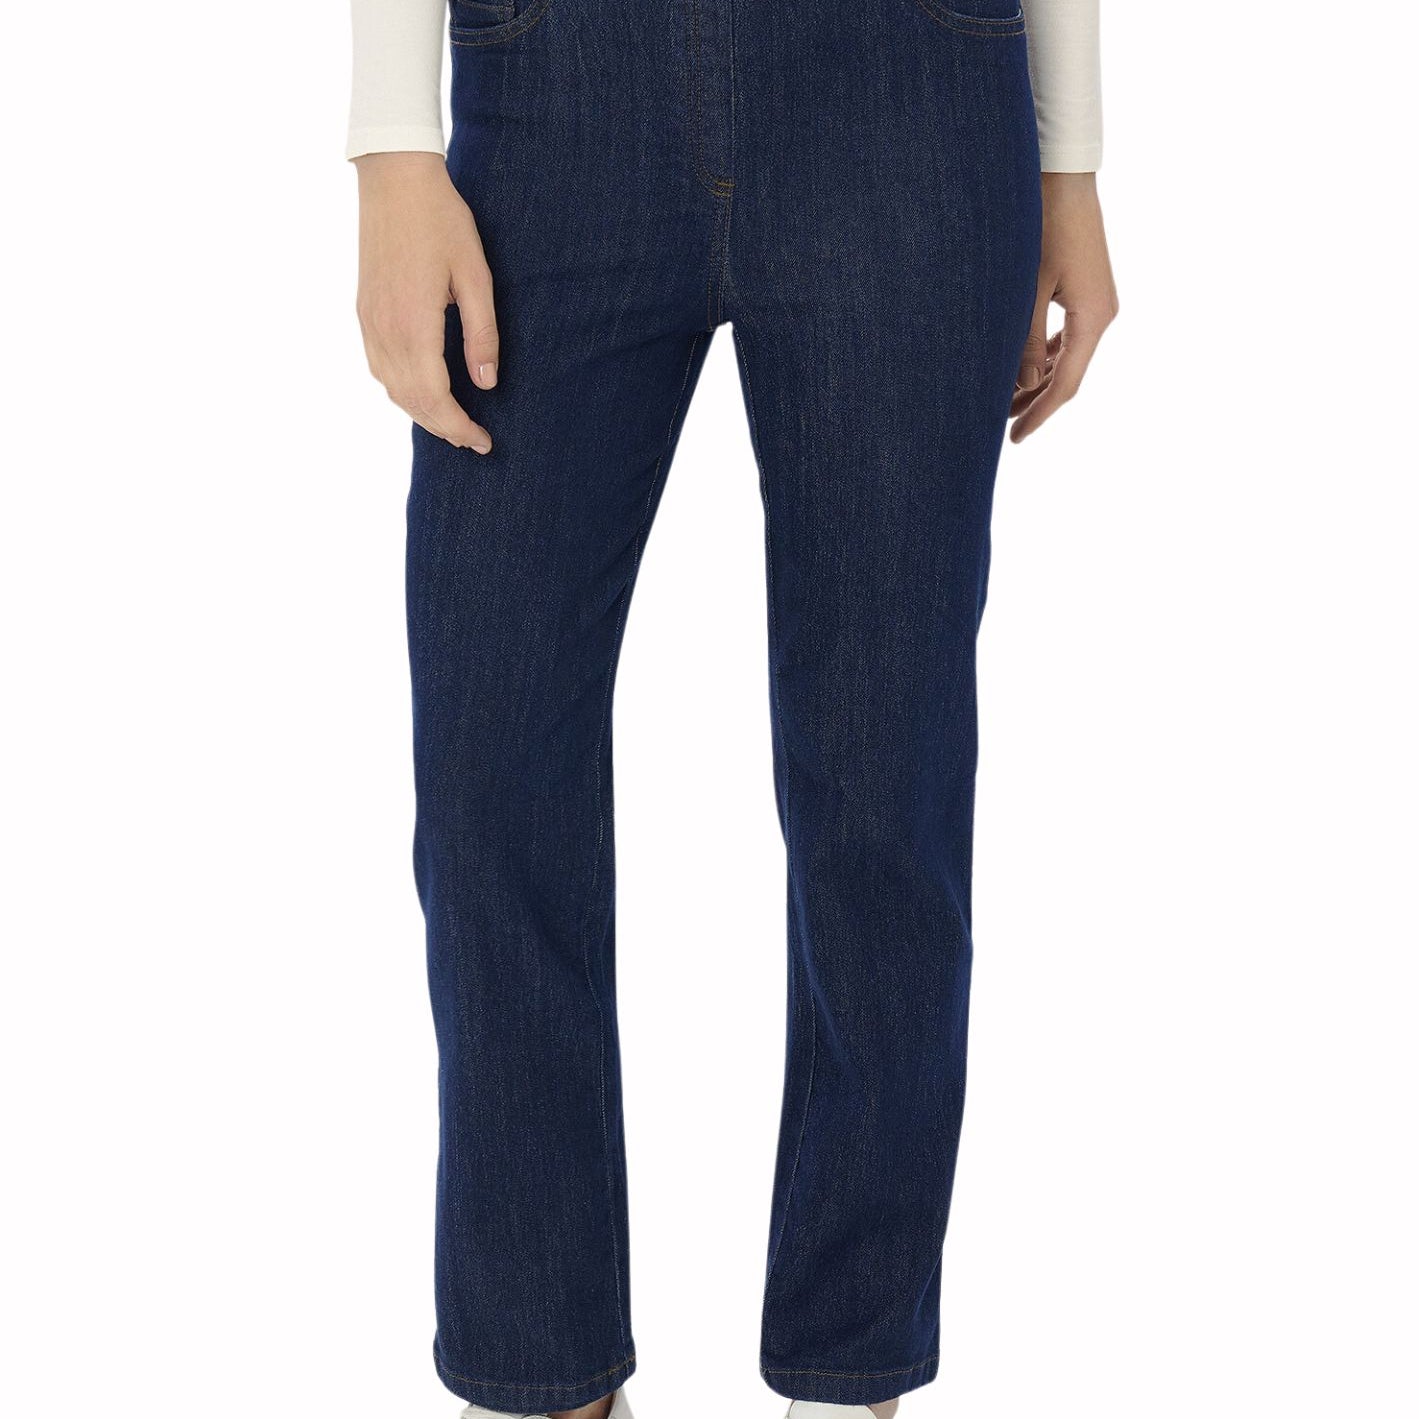 Jeans straight leg in tessuto 4 Seasons Denim RAGNO DM48PP